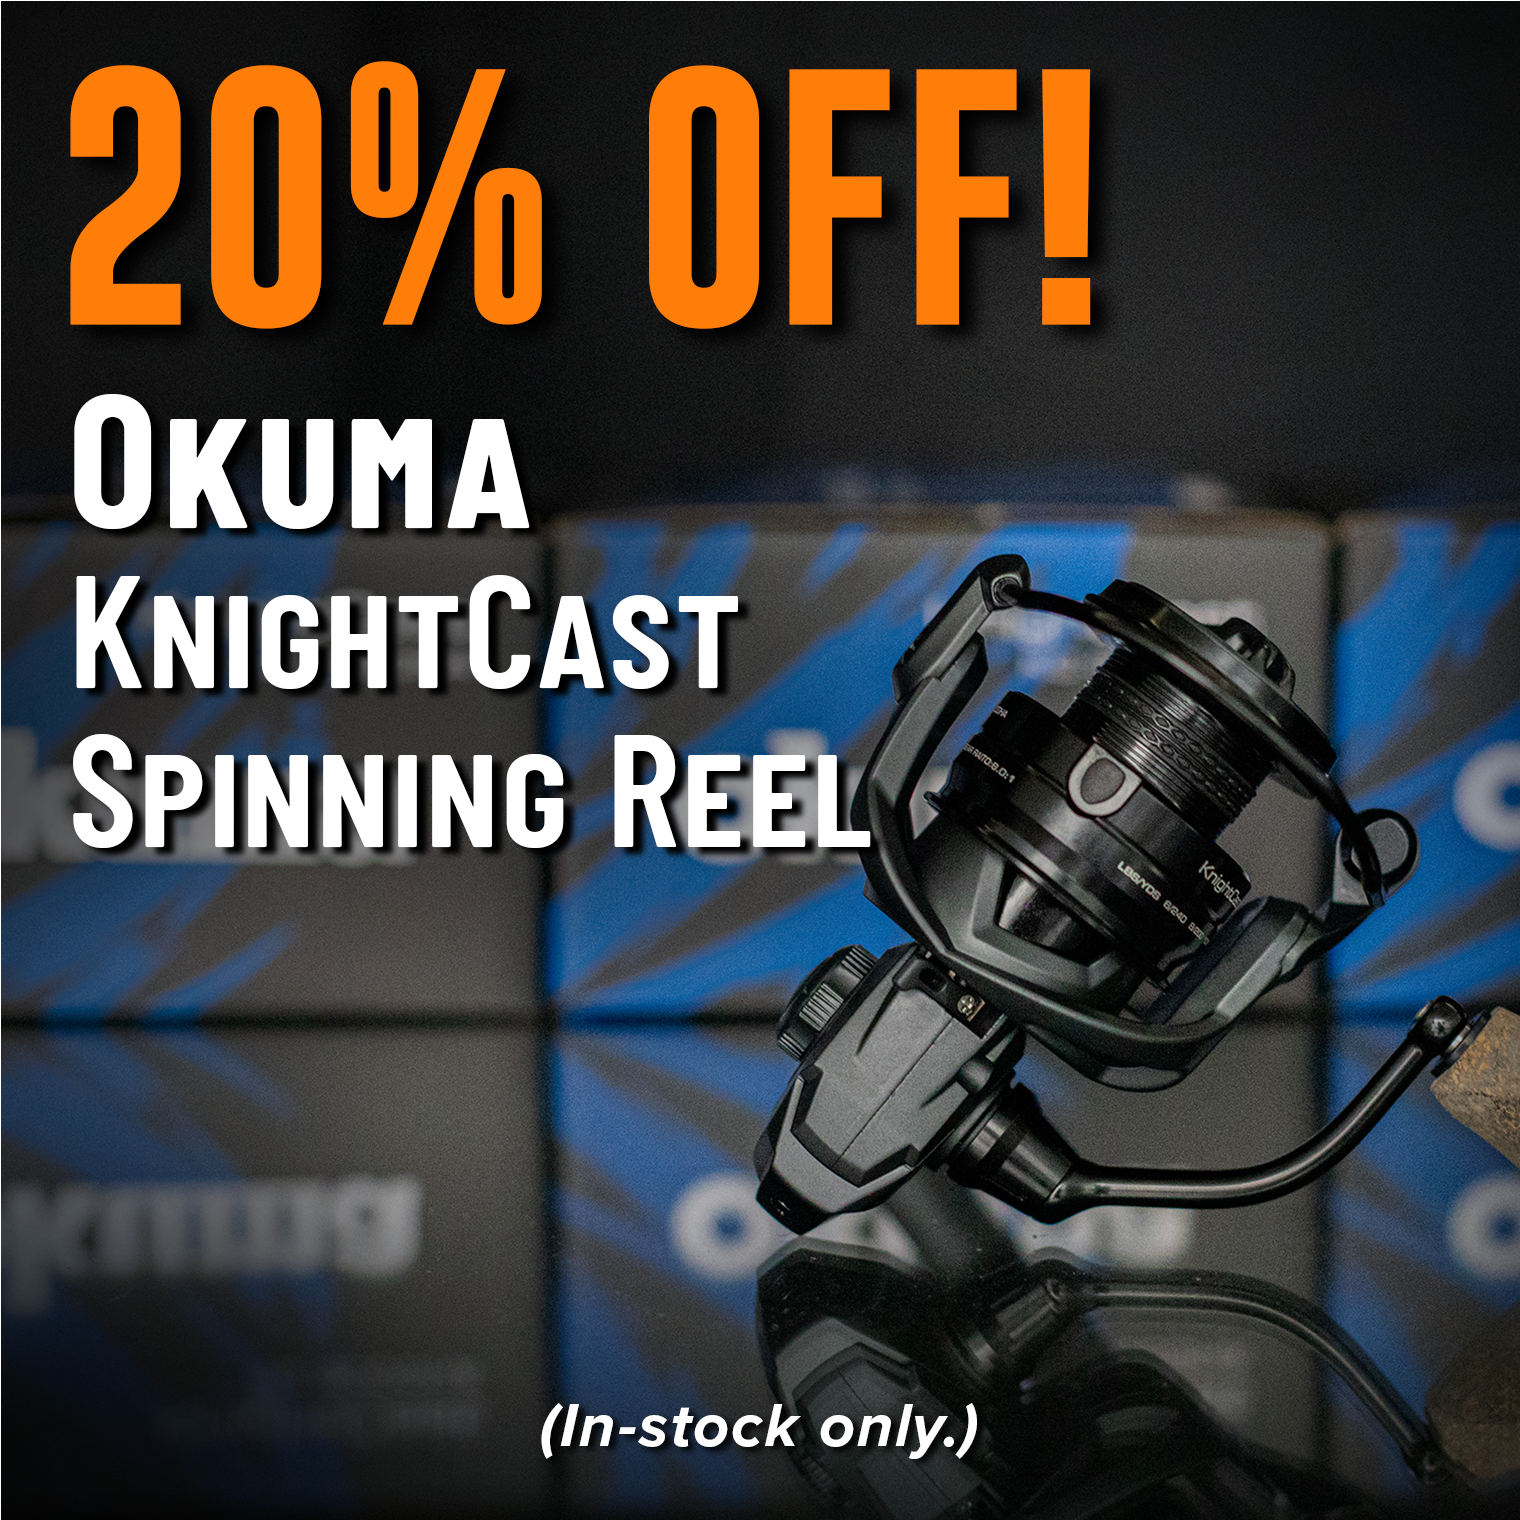 20% Off! Okuma KnightCast Spinning Reel (In-stock only.)